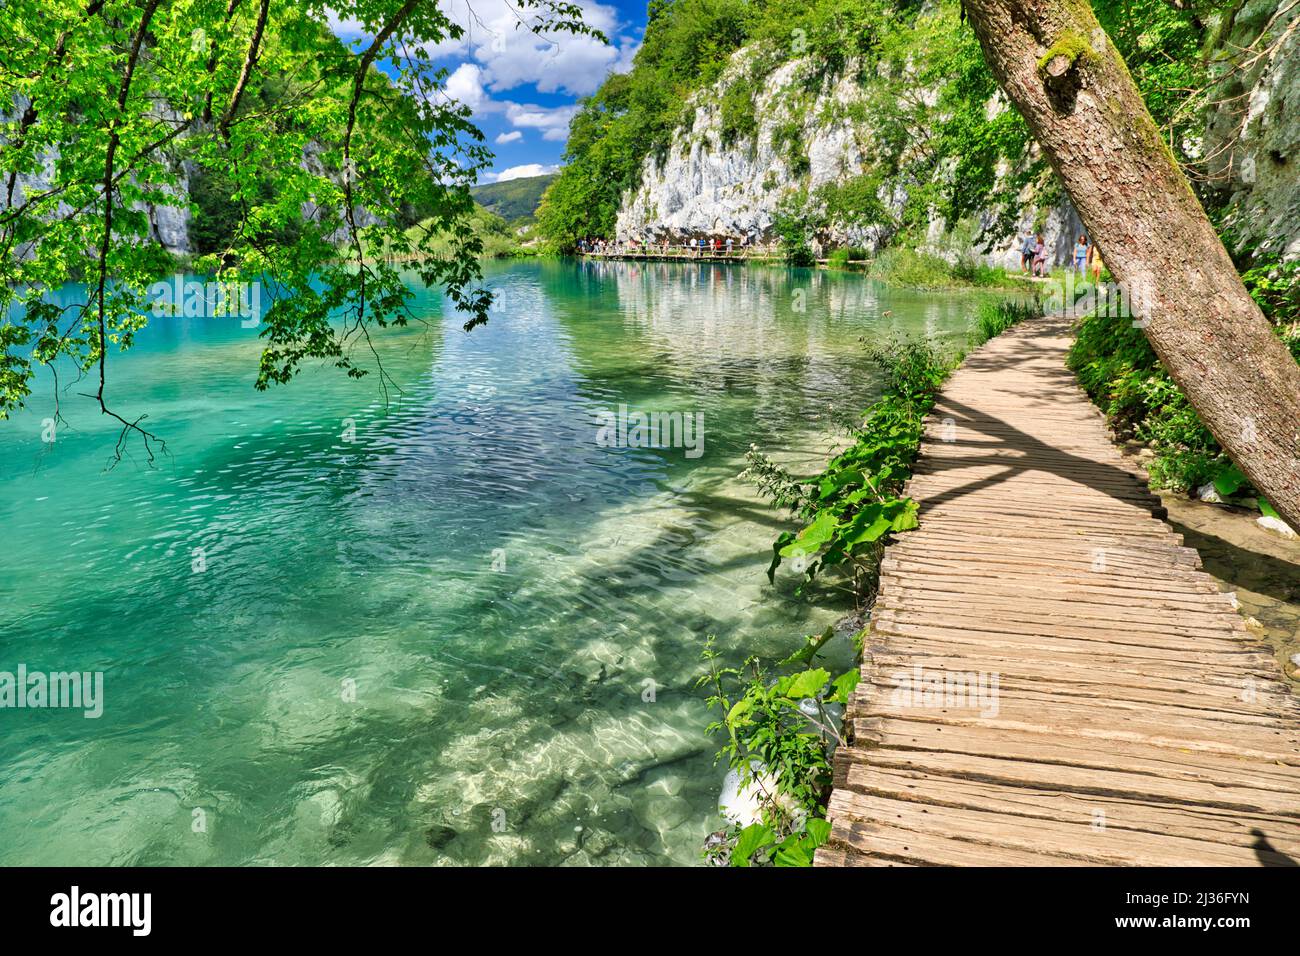 Promenade en bois sur la jetée sur le lac Milanovac du parc national des lacs de Plitvice en Croatie dans la région de Lika. Nom du patrimoine mondial de l'UNESCO de la Croatie Banque D'Images